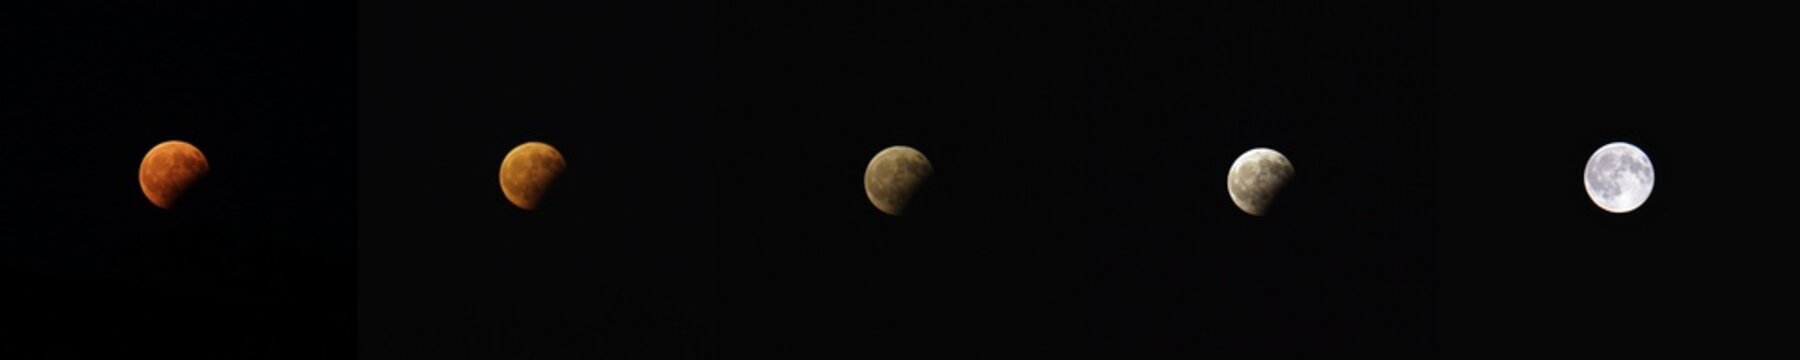 eclissi parziale di luna, agosto 2017